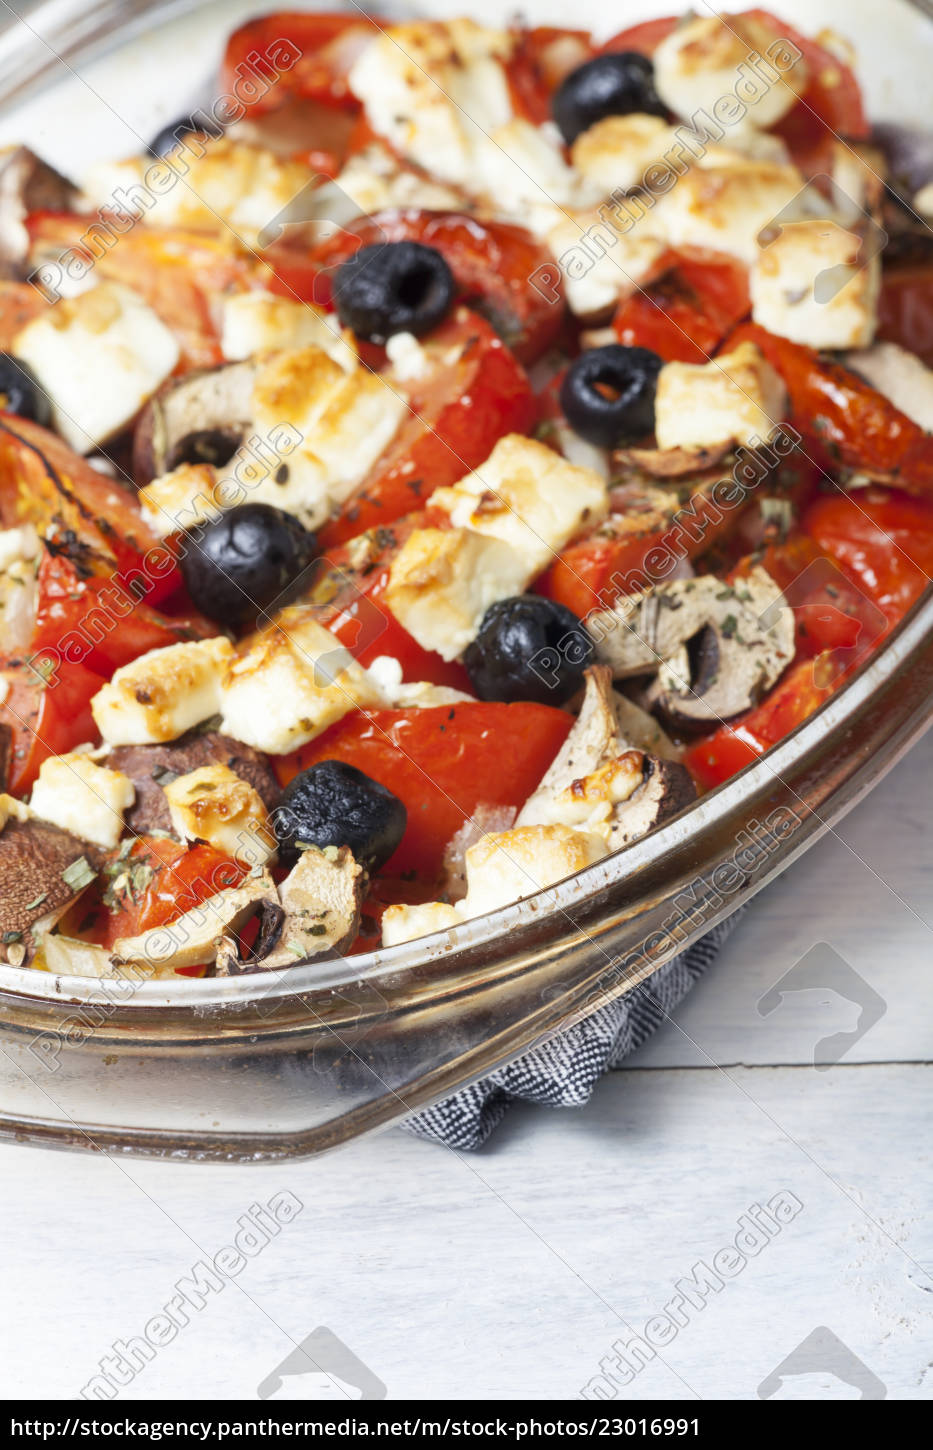 Gegrillter griechischer Feta-Käse auf Glas - Lizenzfreies Bild ...